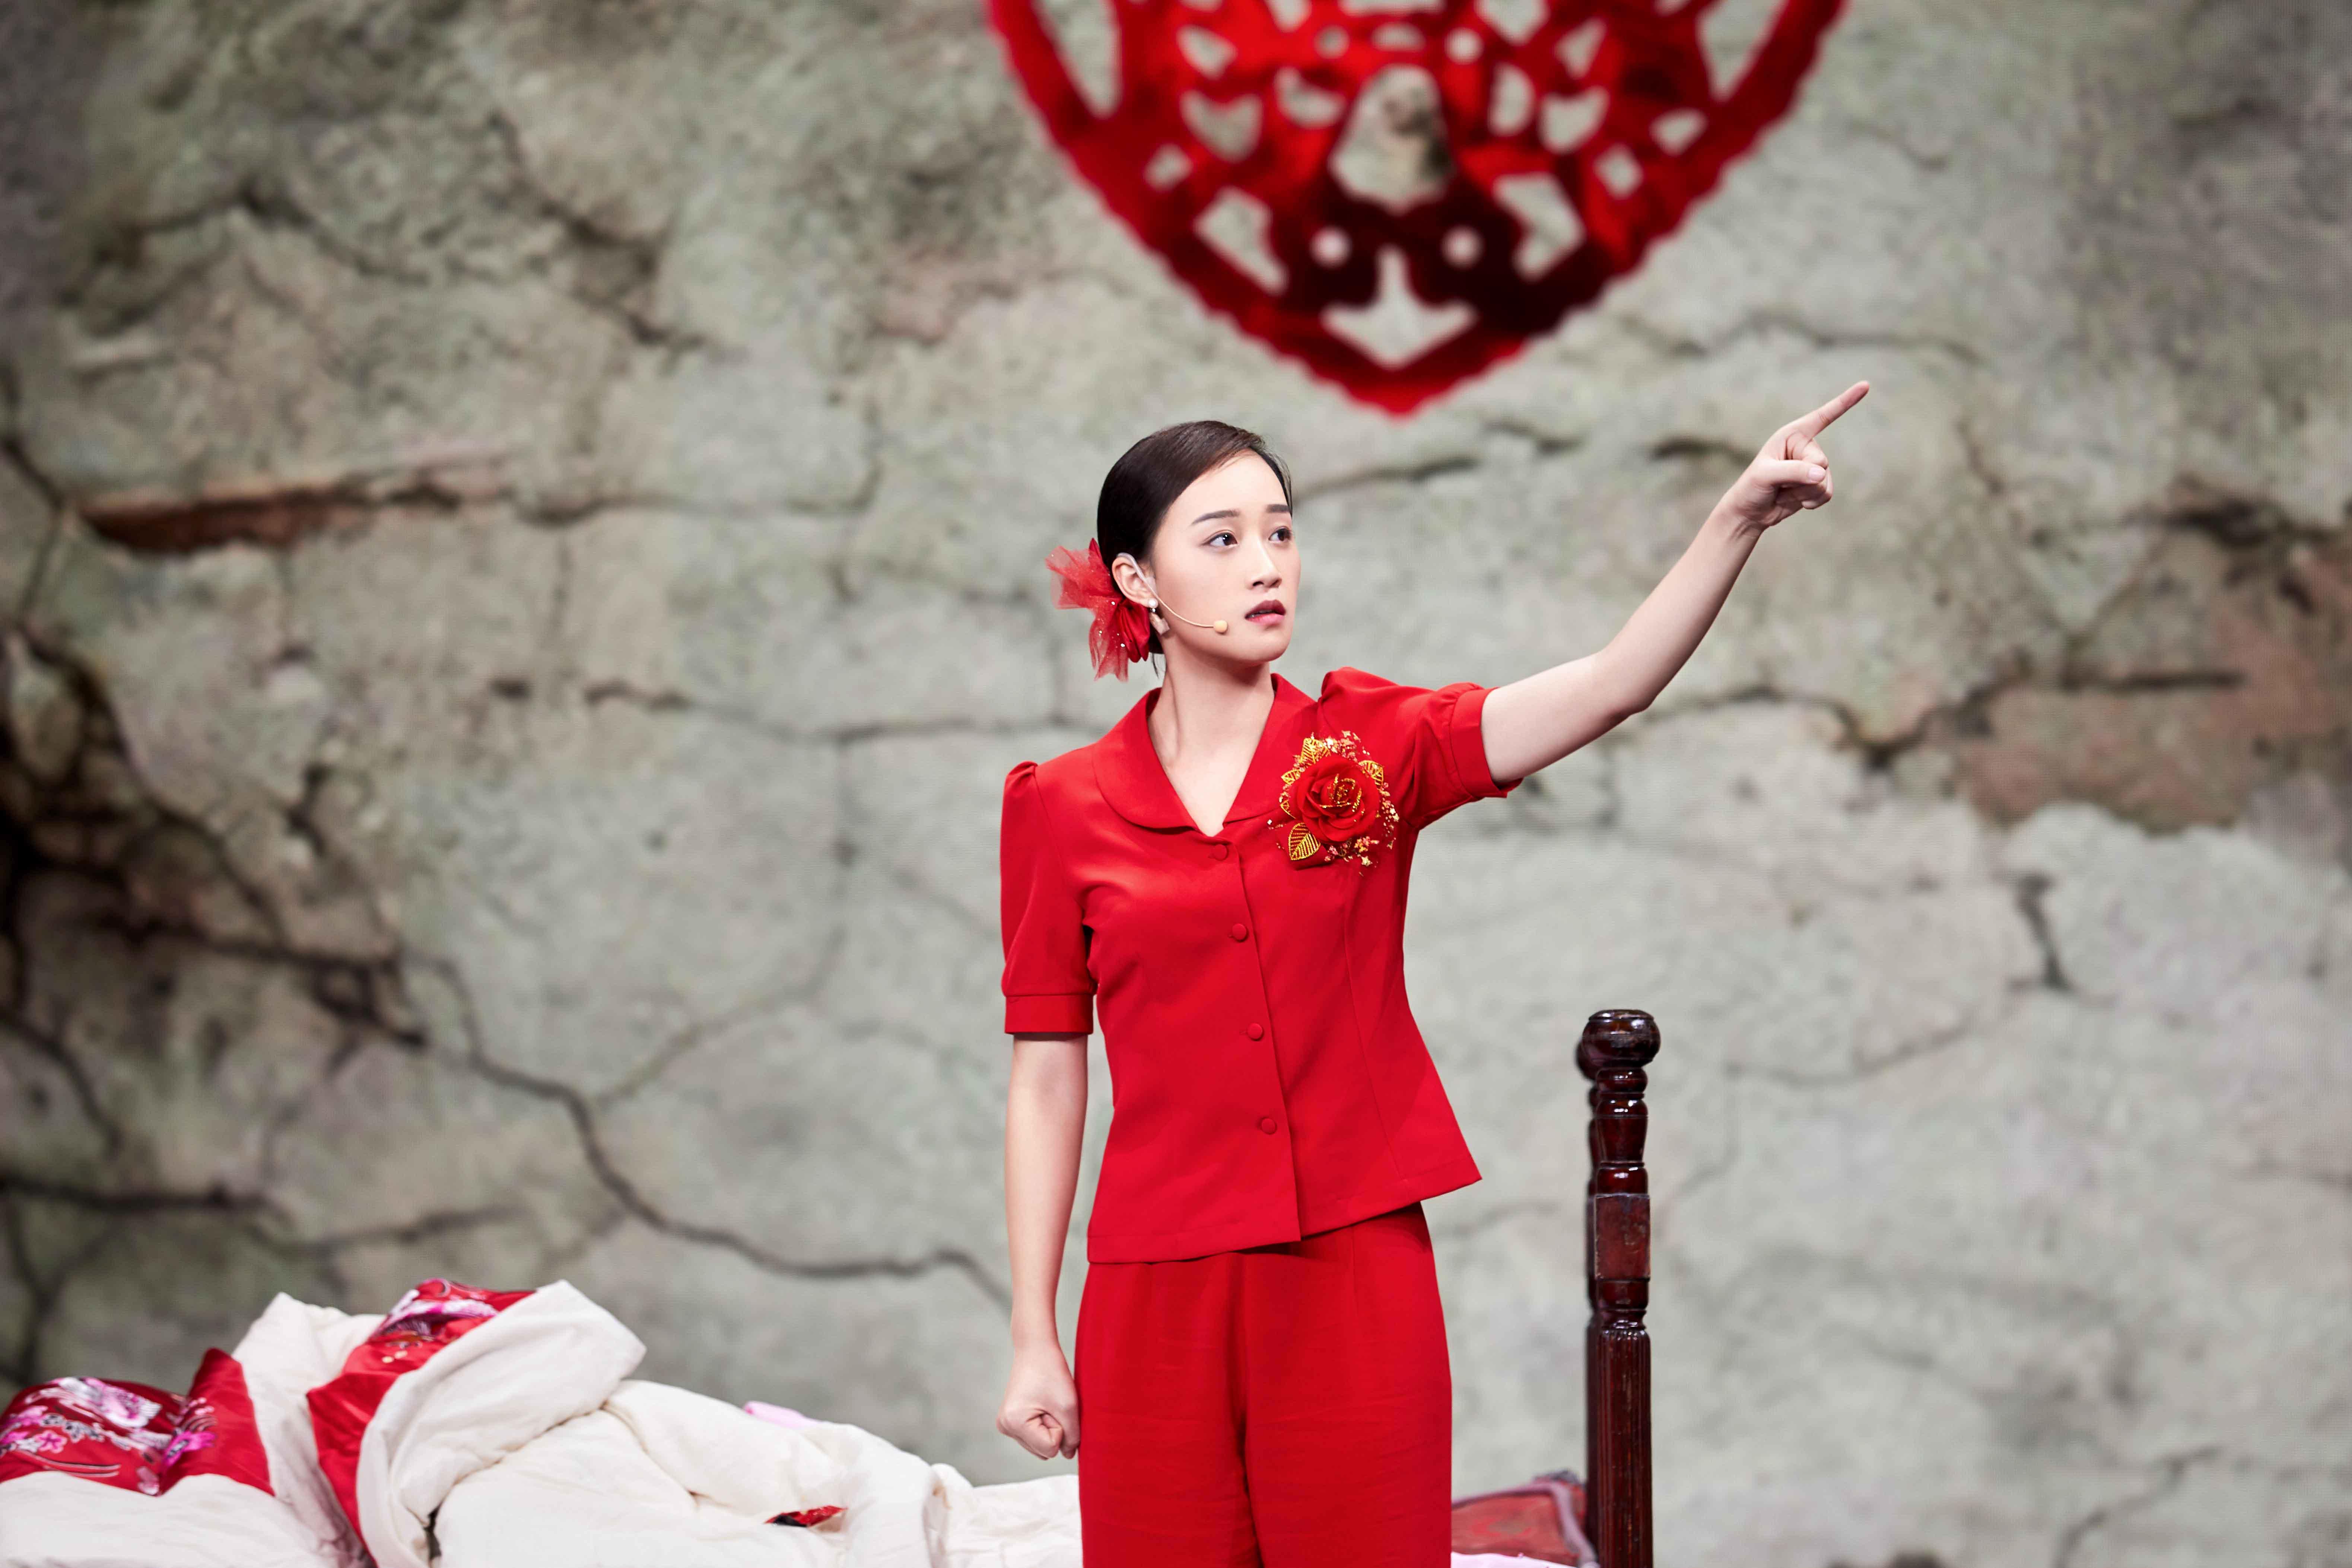 凌潇肃、蓝盈莹在《演员的诞生》演技炸裂，被章子怡宋丹丹狂夸 - 哔哩哔哩